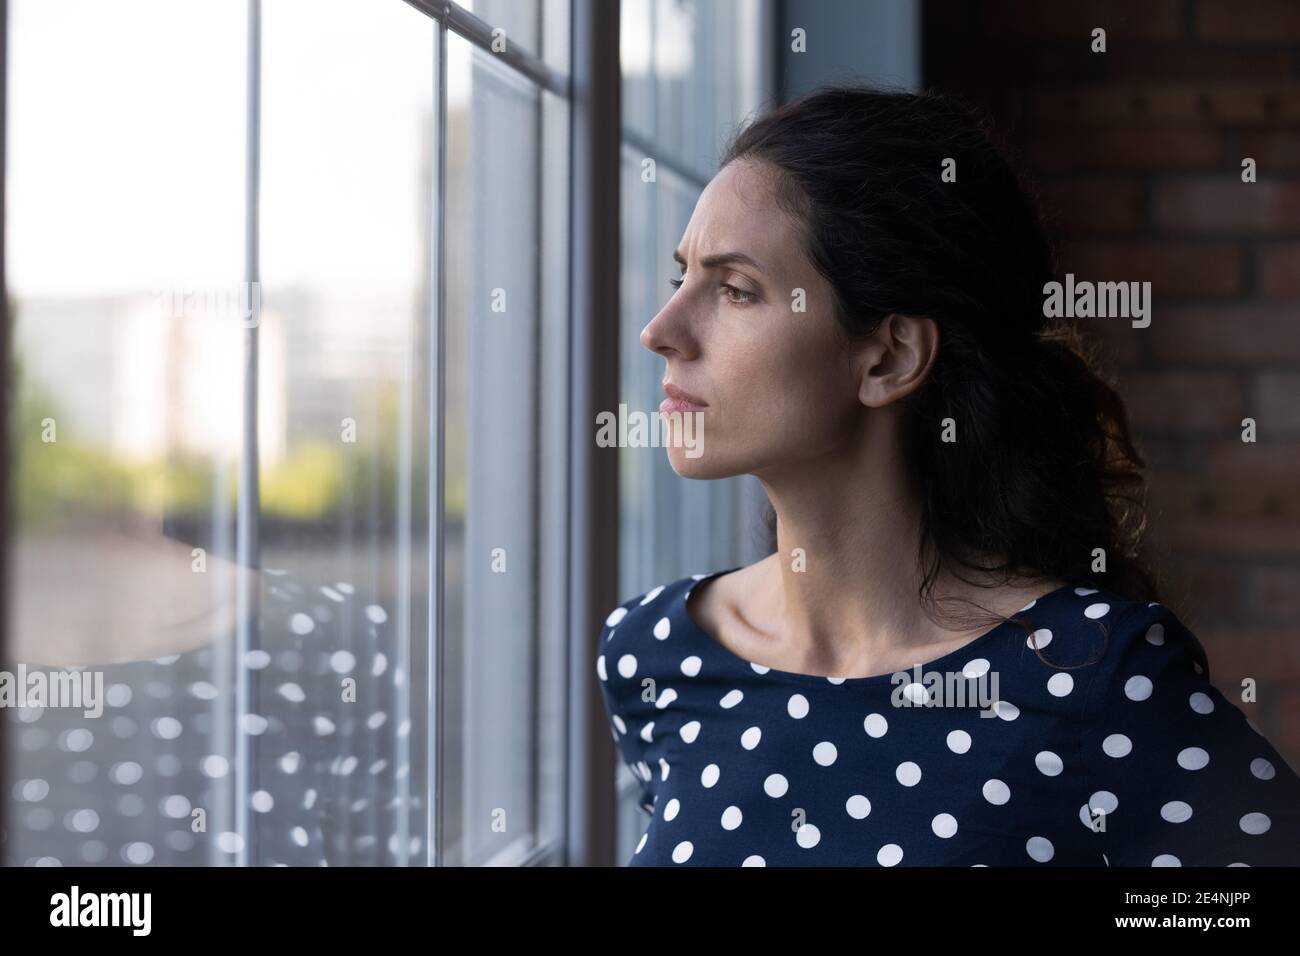 Unhappy woman look in window feeling worried Stock Photo